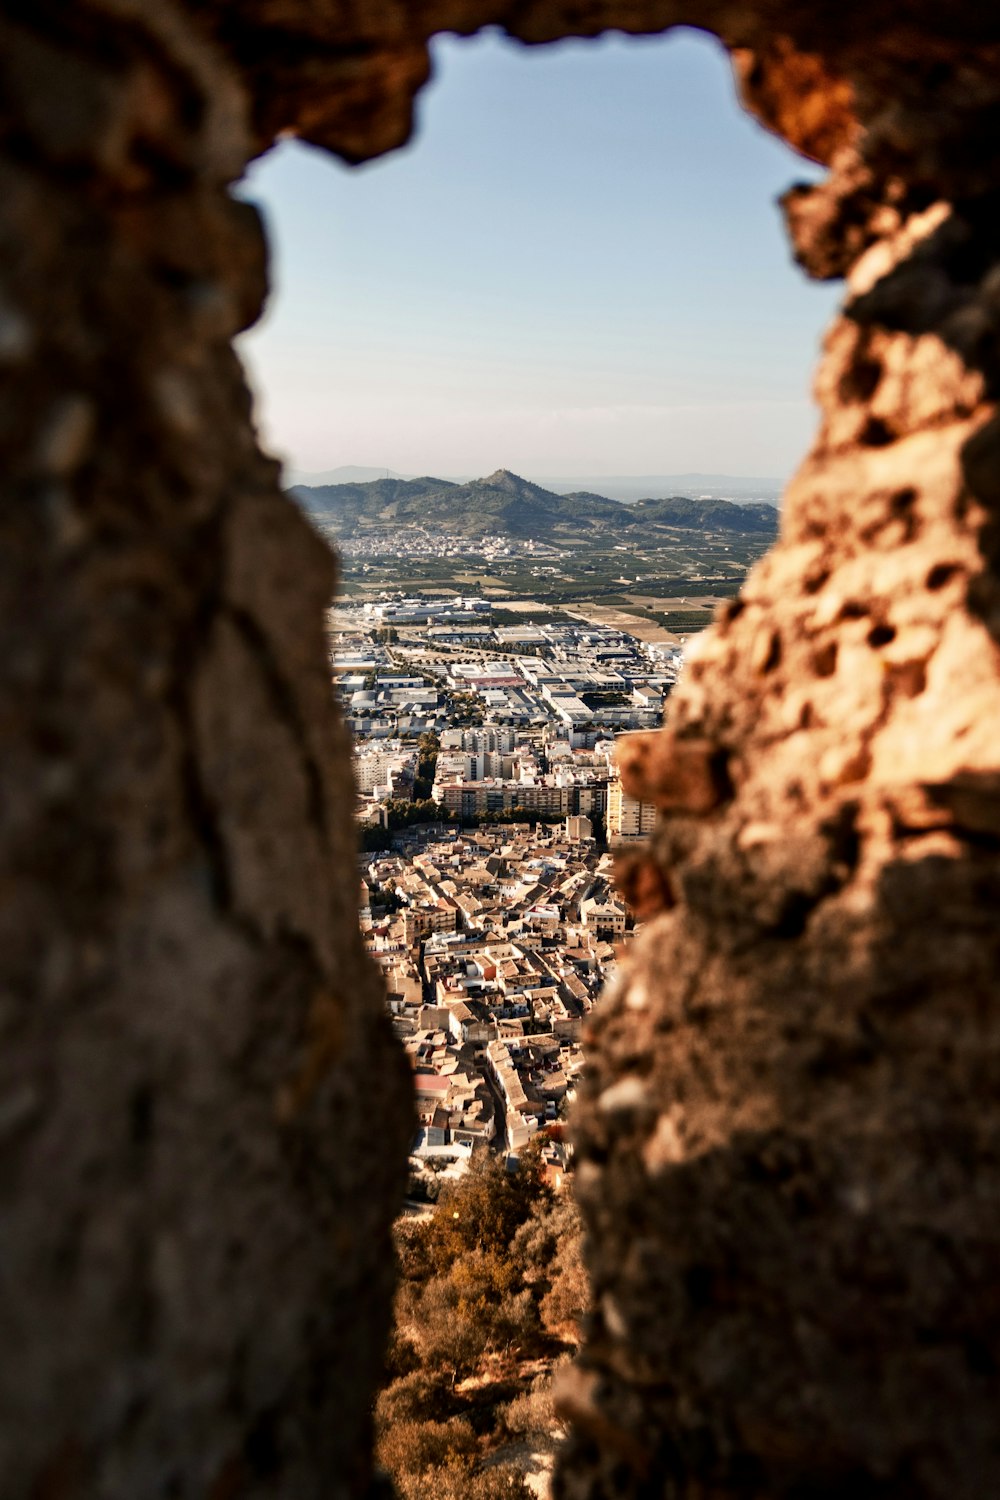 Una vista de una ciudad a través de un agujero en un muro de piedra